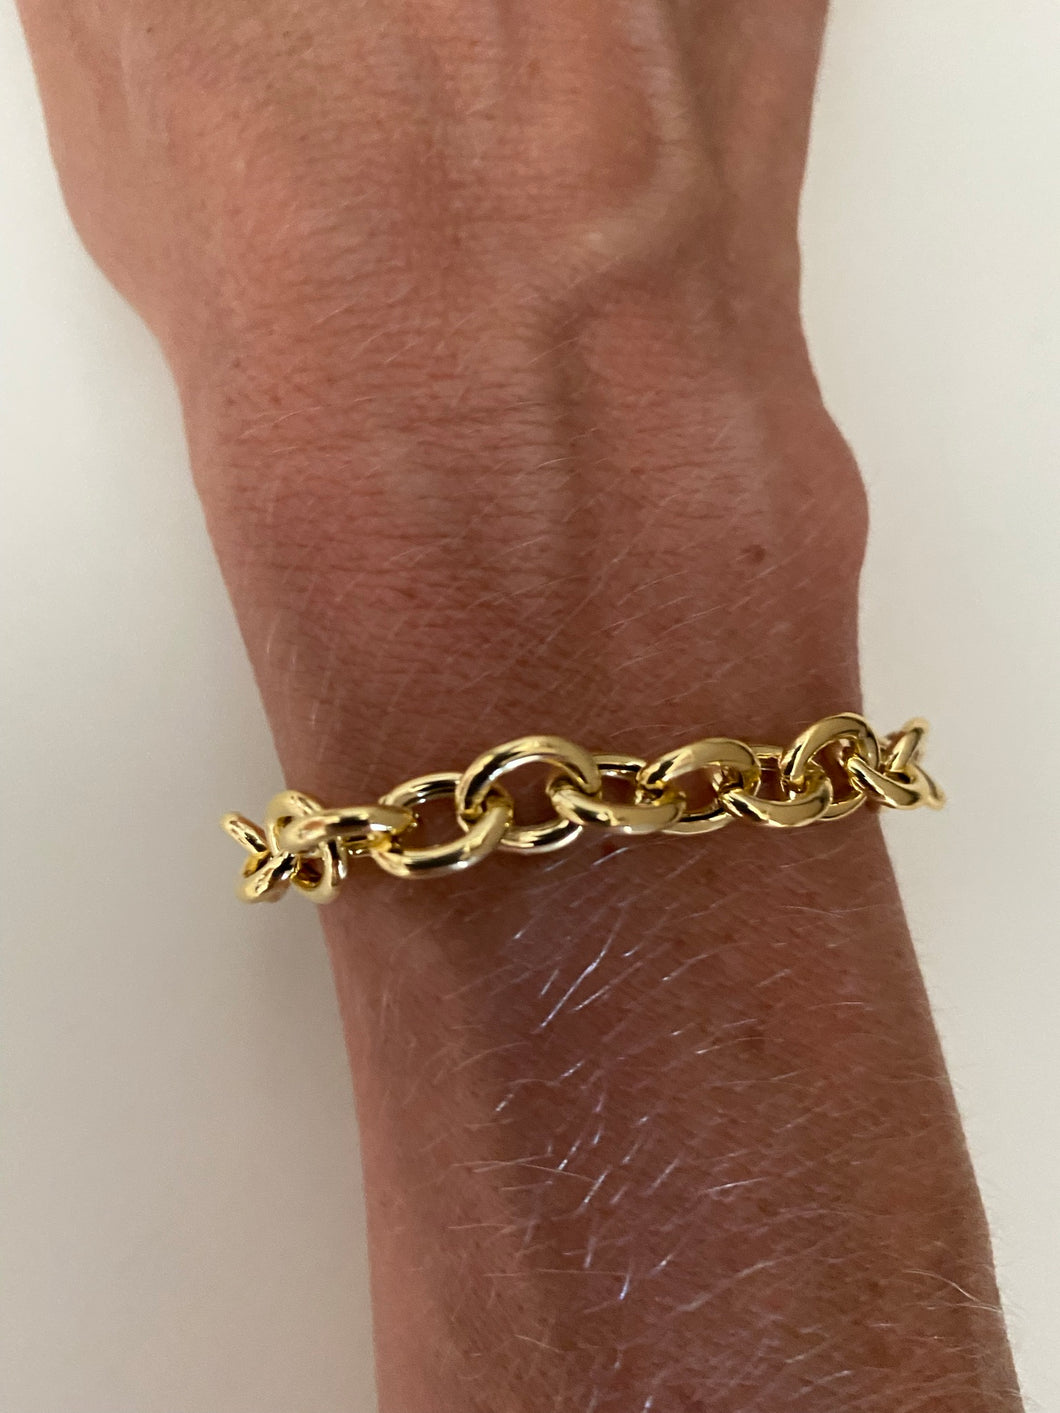 The Golden Bling  bracelet